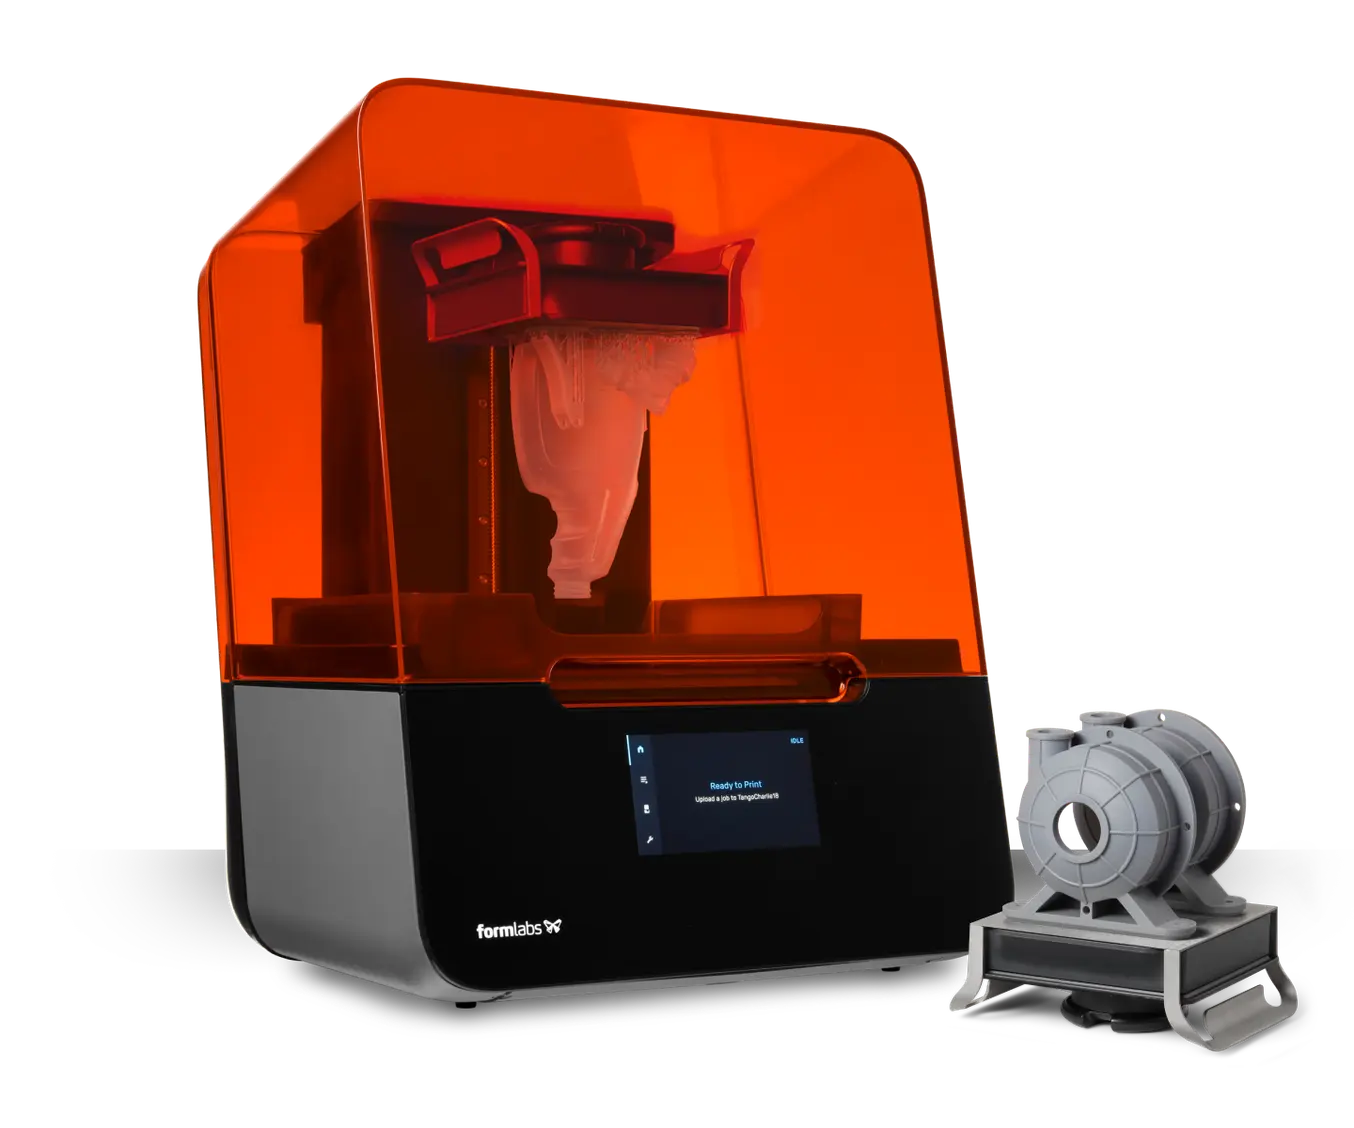 Urter gys Endelig Form 3: Industrial-Quality Desktop SLA 3D Printer | Formlabs